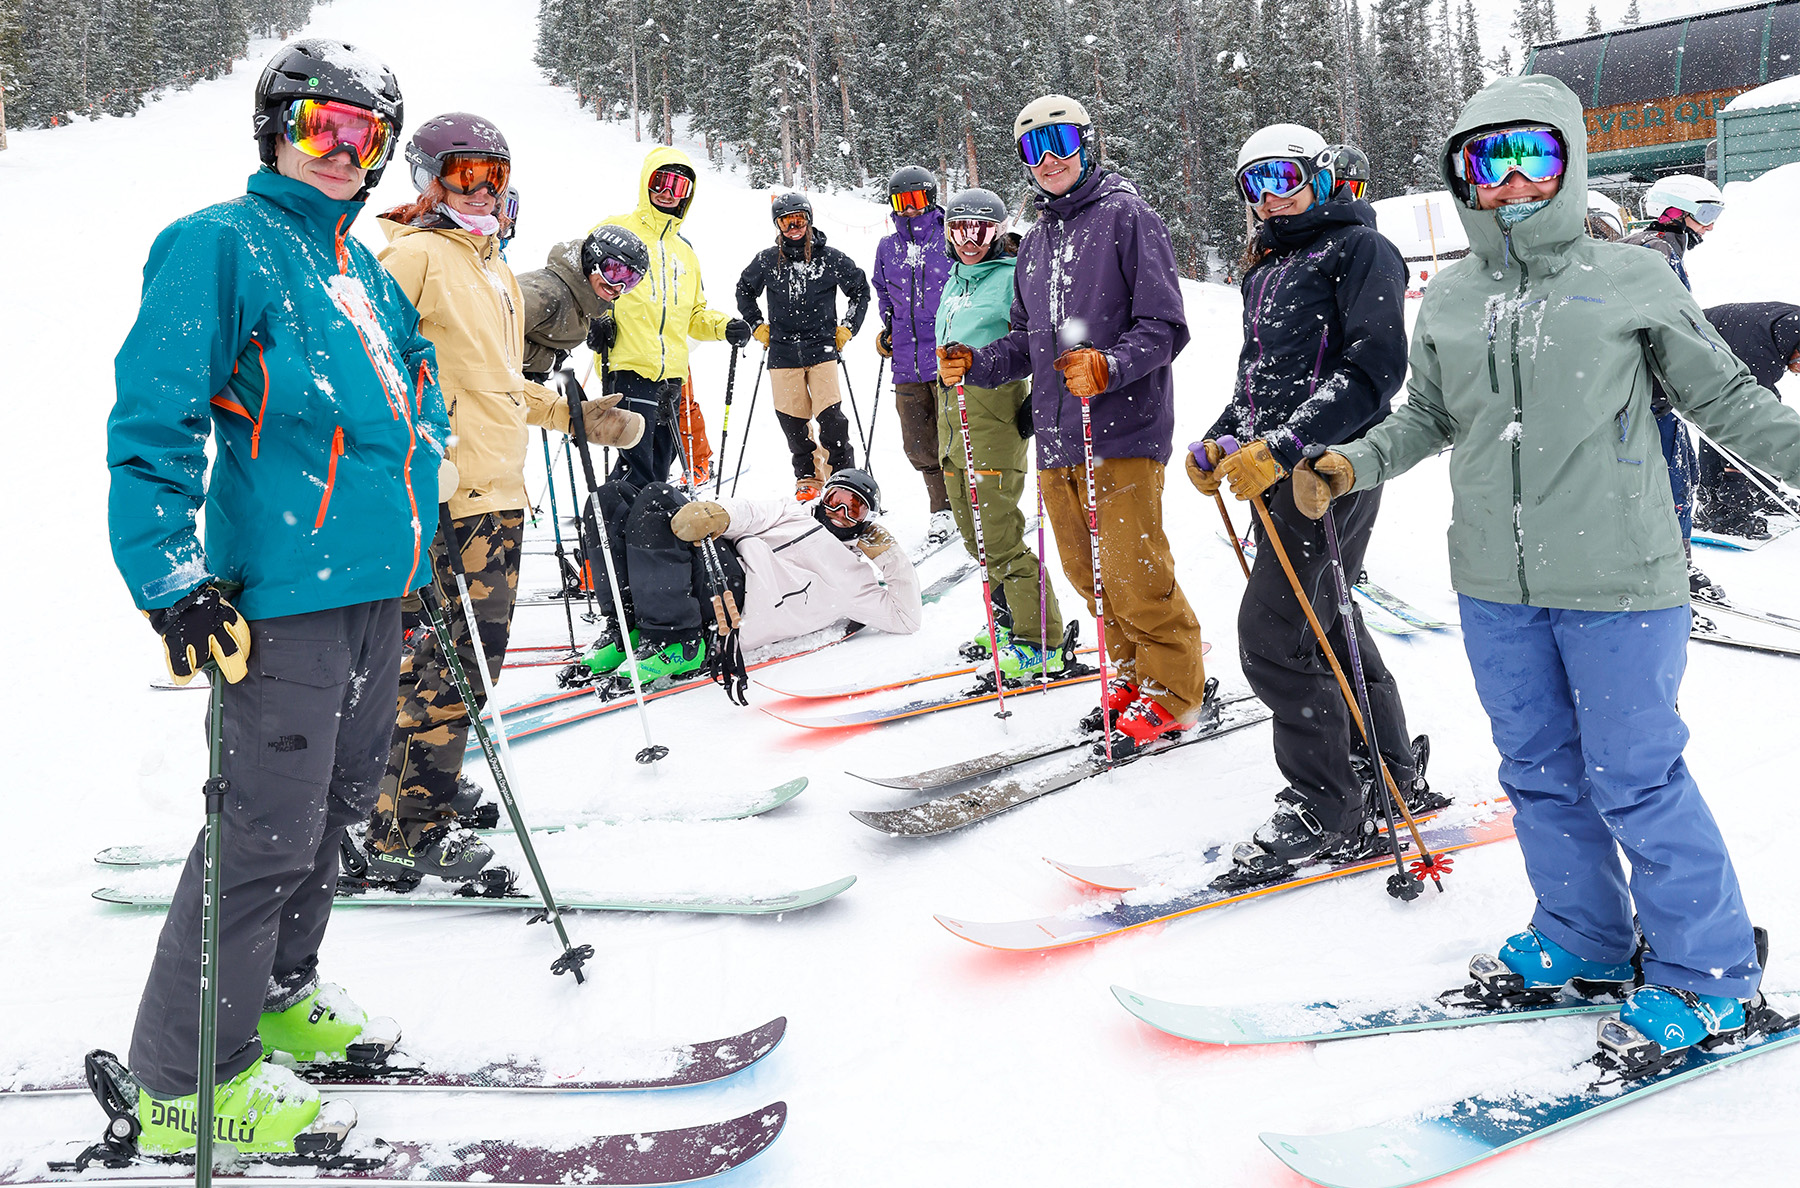 Ski Meetup (Jonathan on the Stockli Stormrider 102)